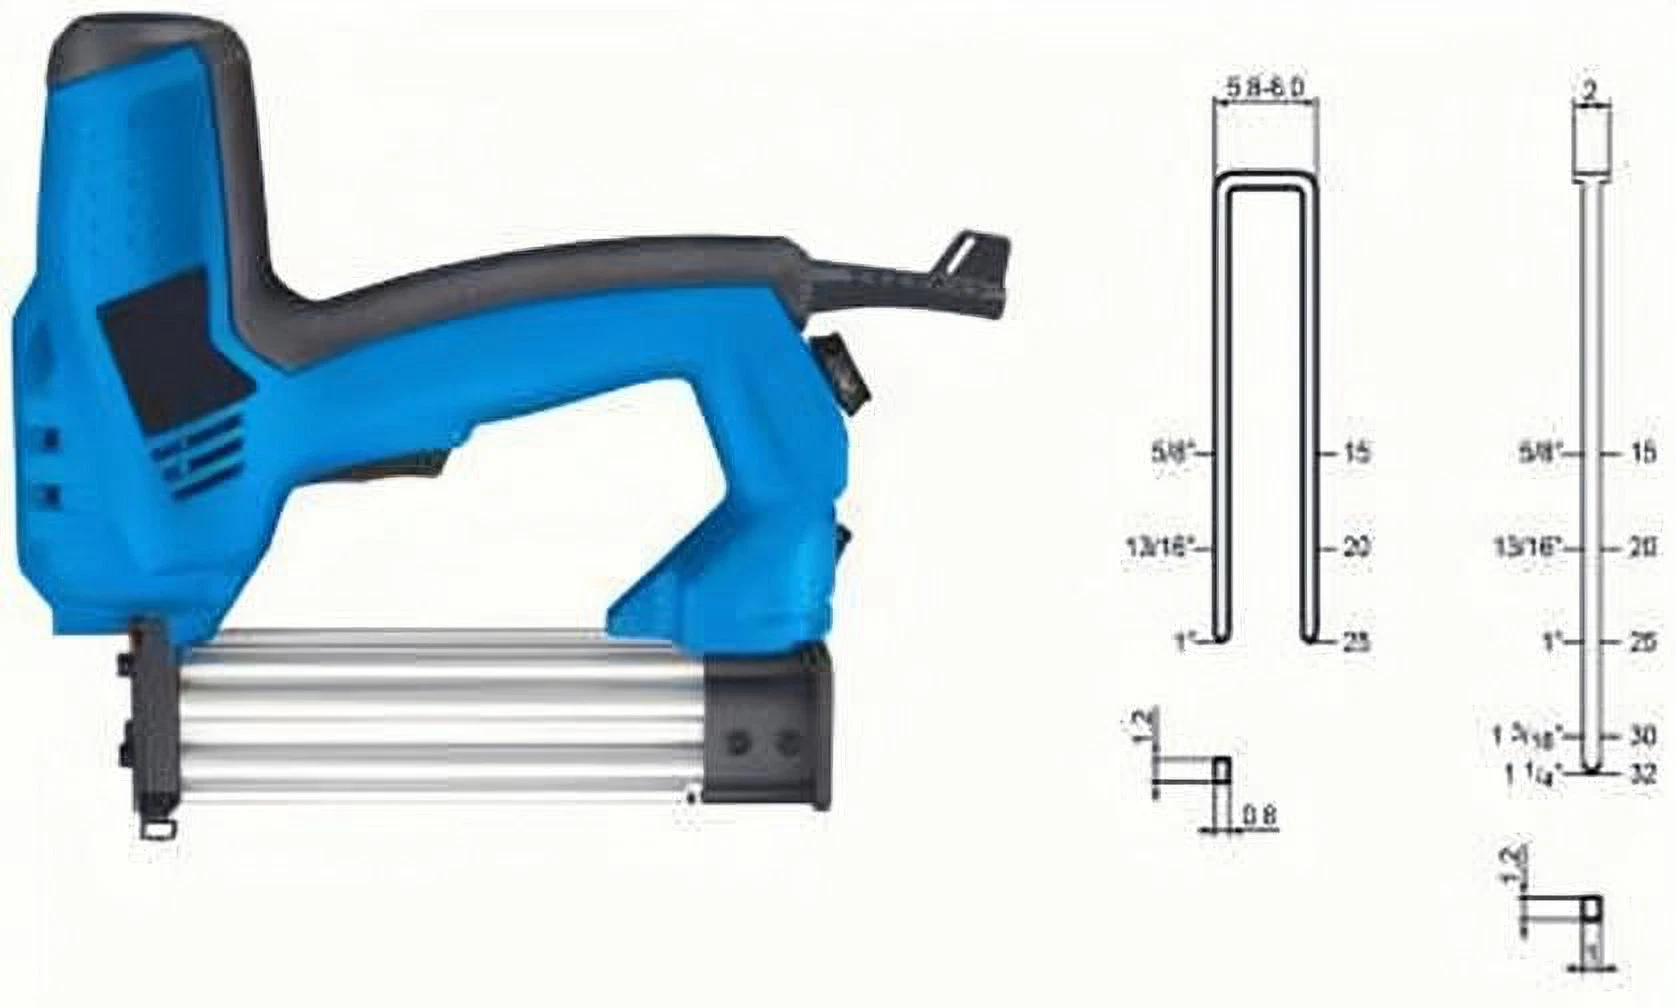 Professionelle Elektrische Tacker / Brad Nailer / Nail Gun / Staple Gun-Hardware Power Tools